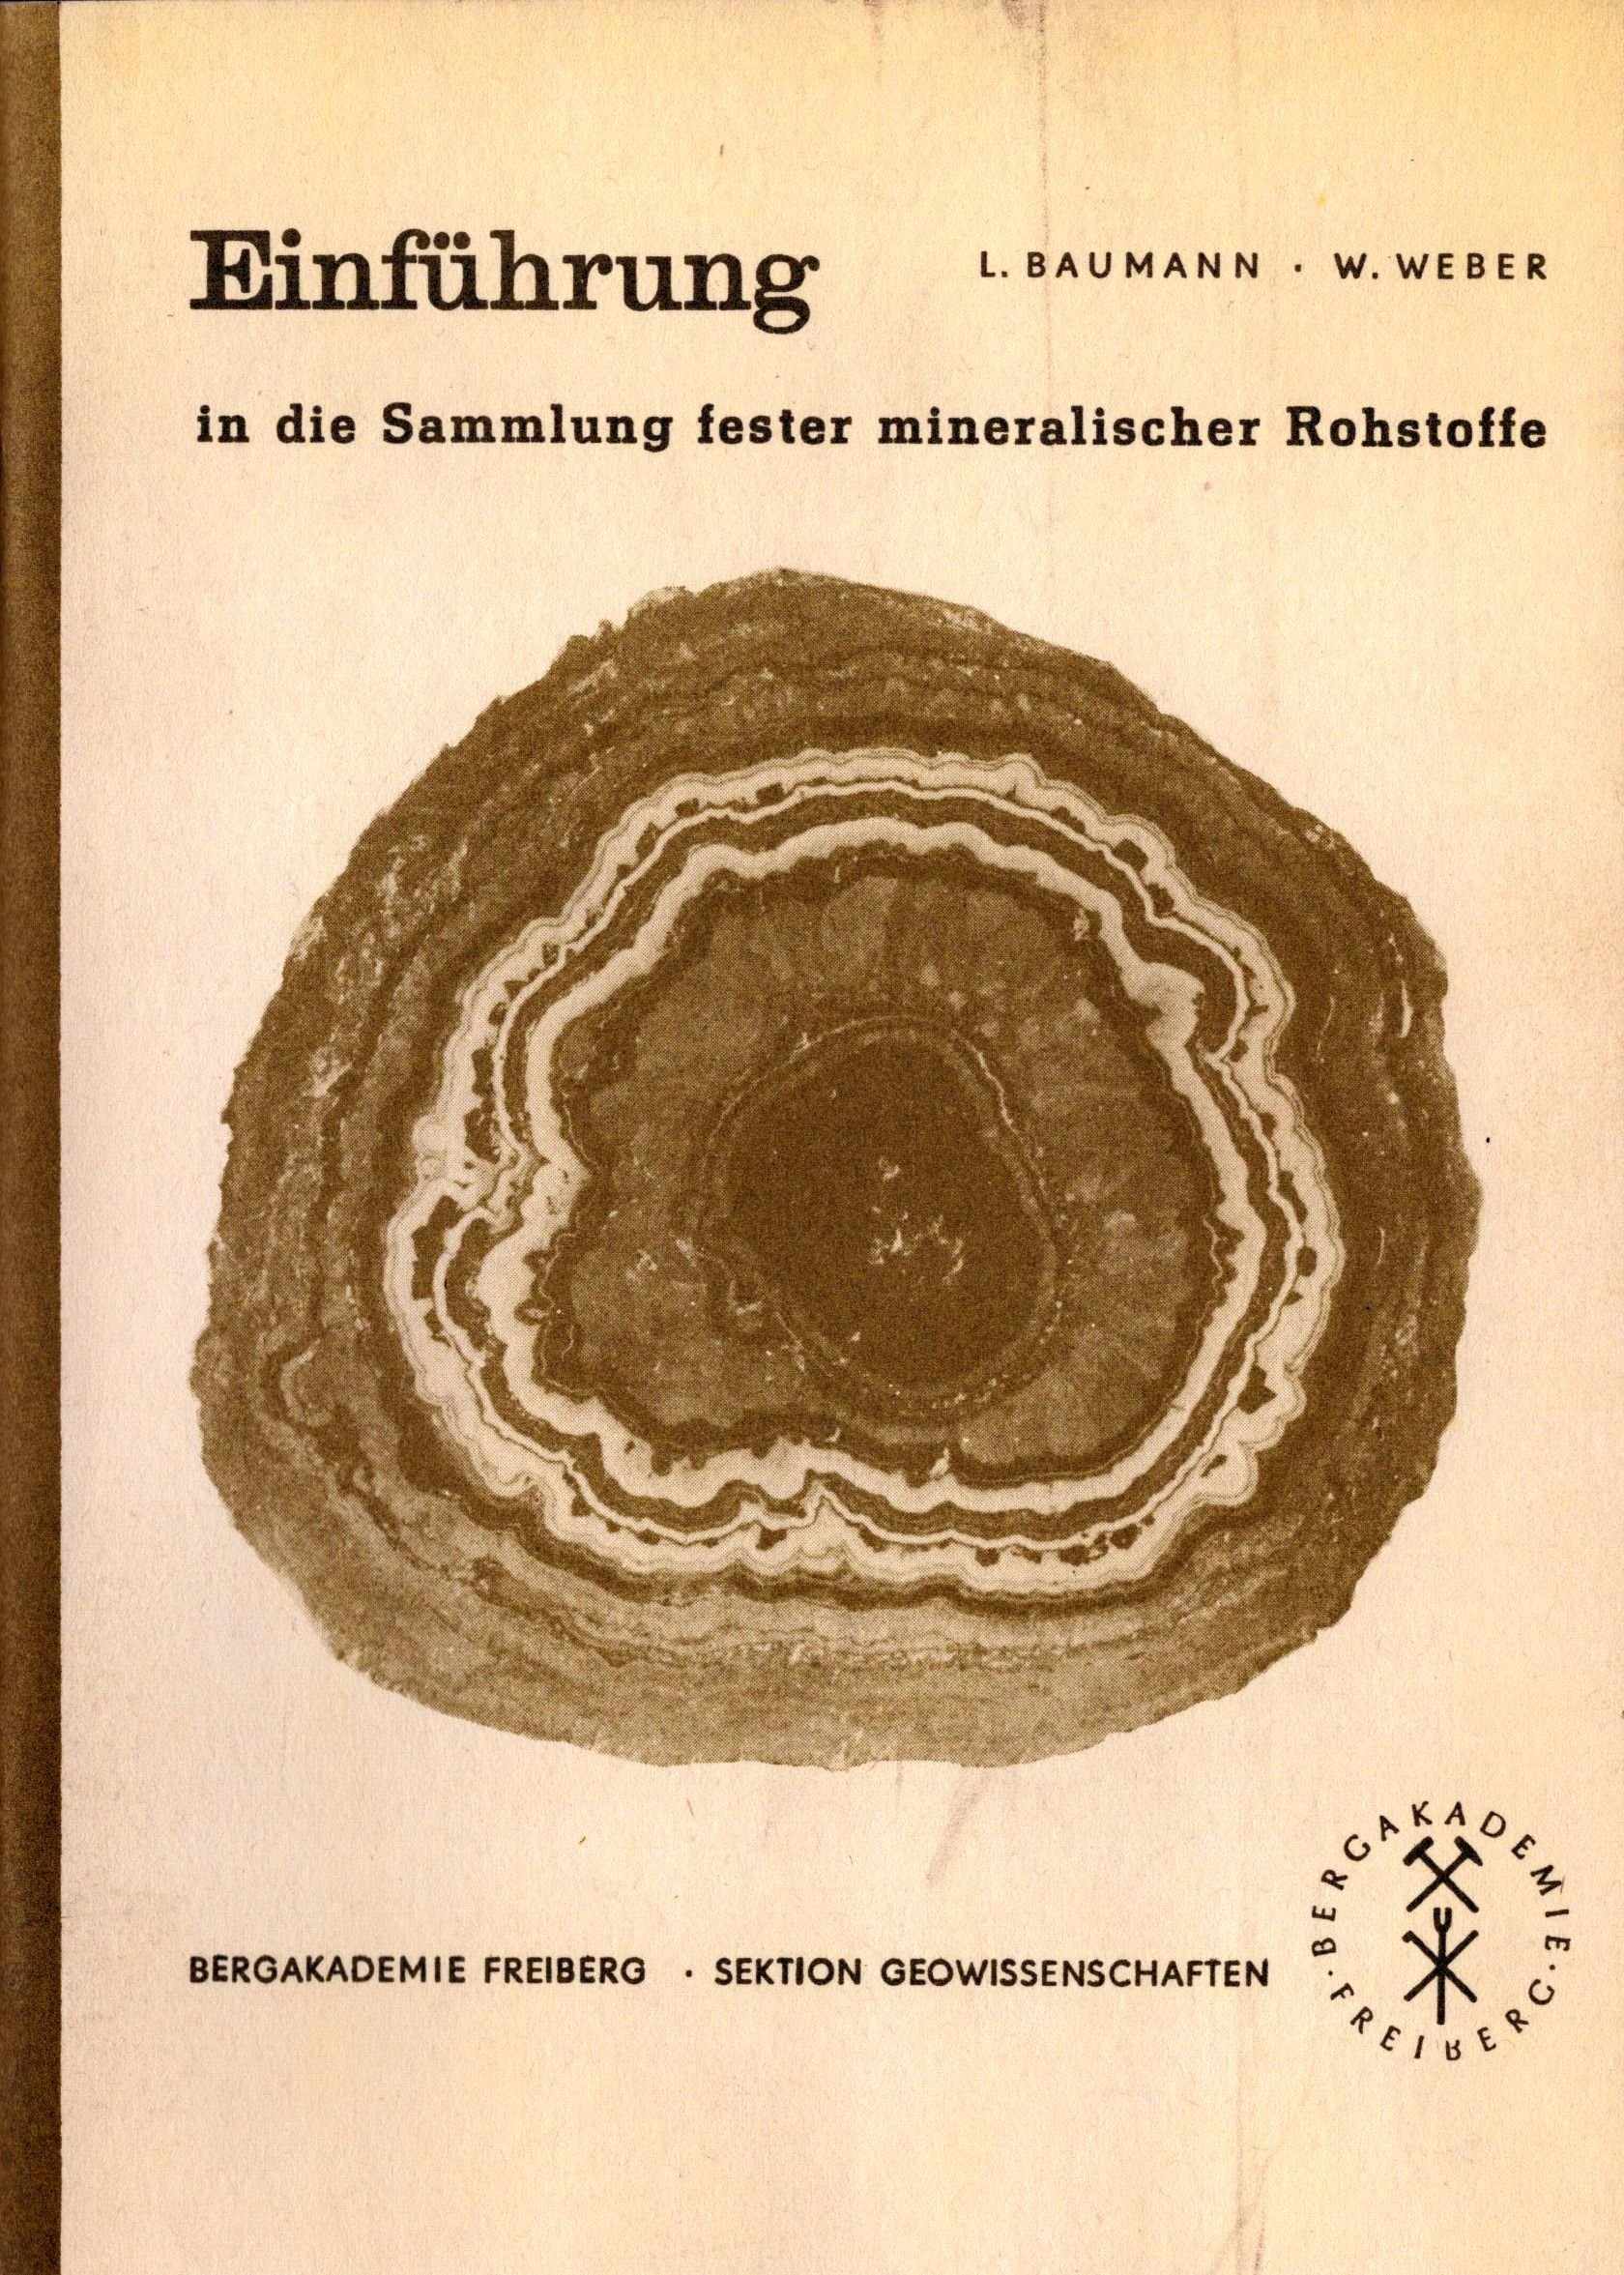 Einführung in die Sammlung fester mineralischer Rohstoffe (Archiv SAXONIA-FREIBERG-STIFTUNG CC BY-NC-SA)